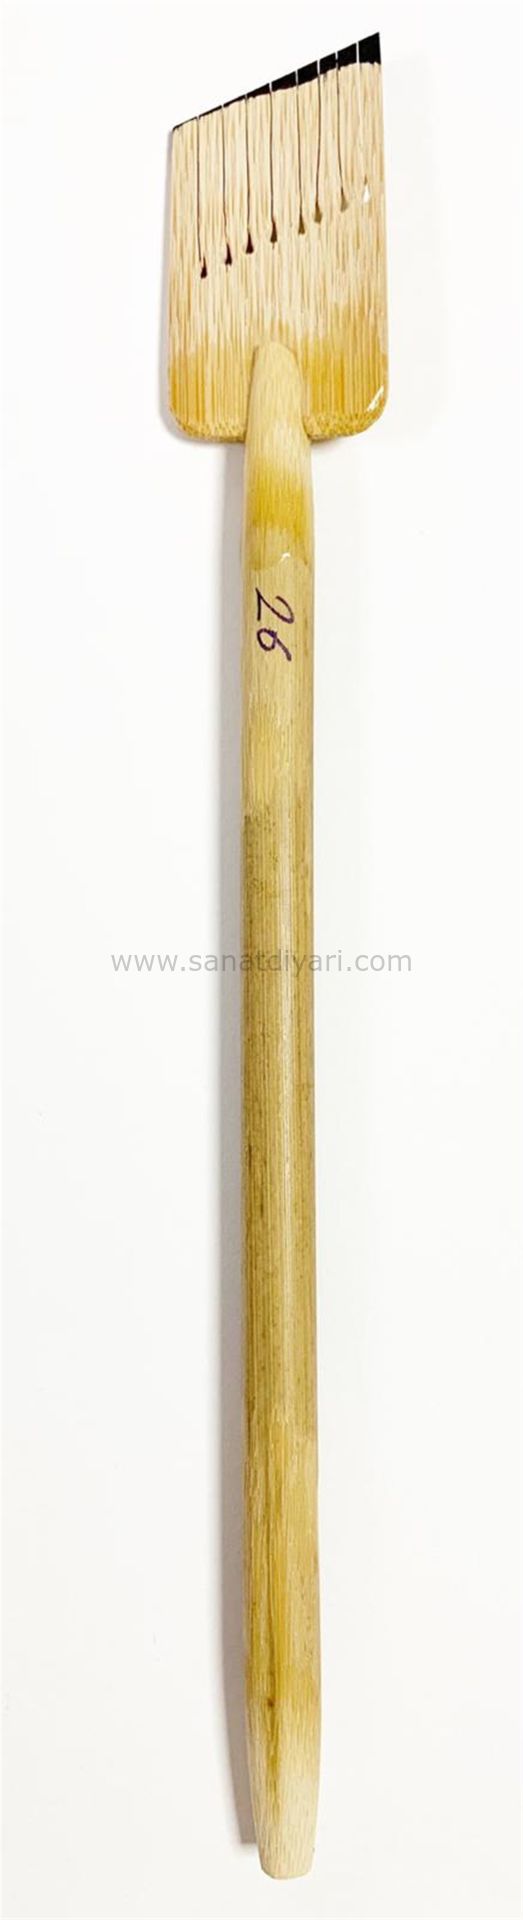 Tiryakiart Şaklı Bambu Kalem 26 mm